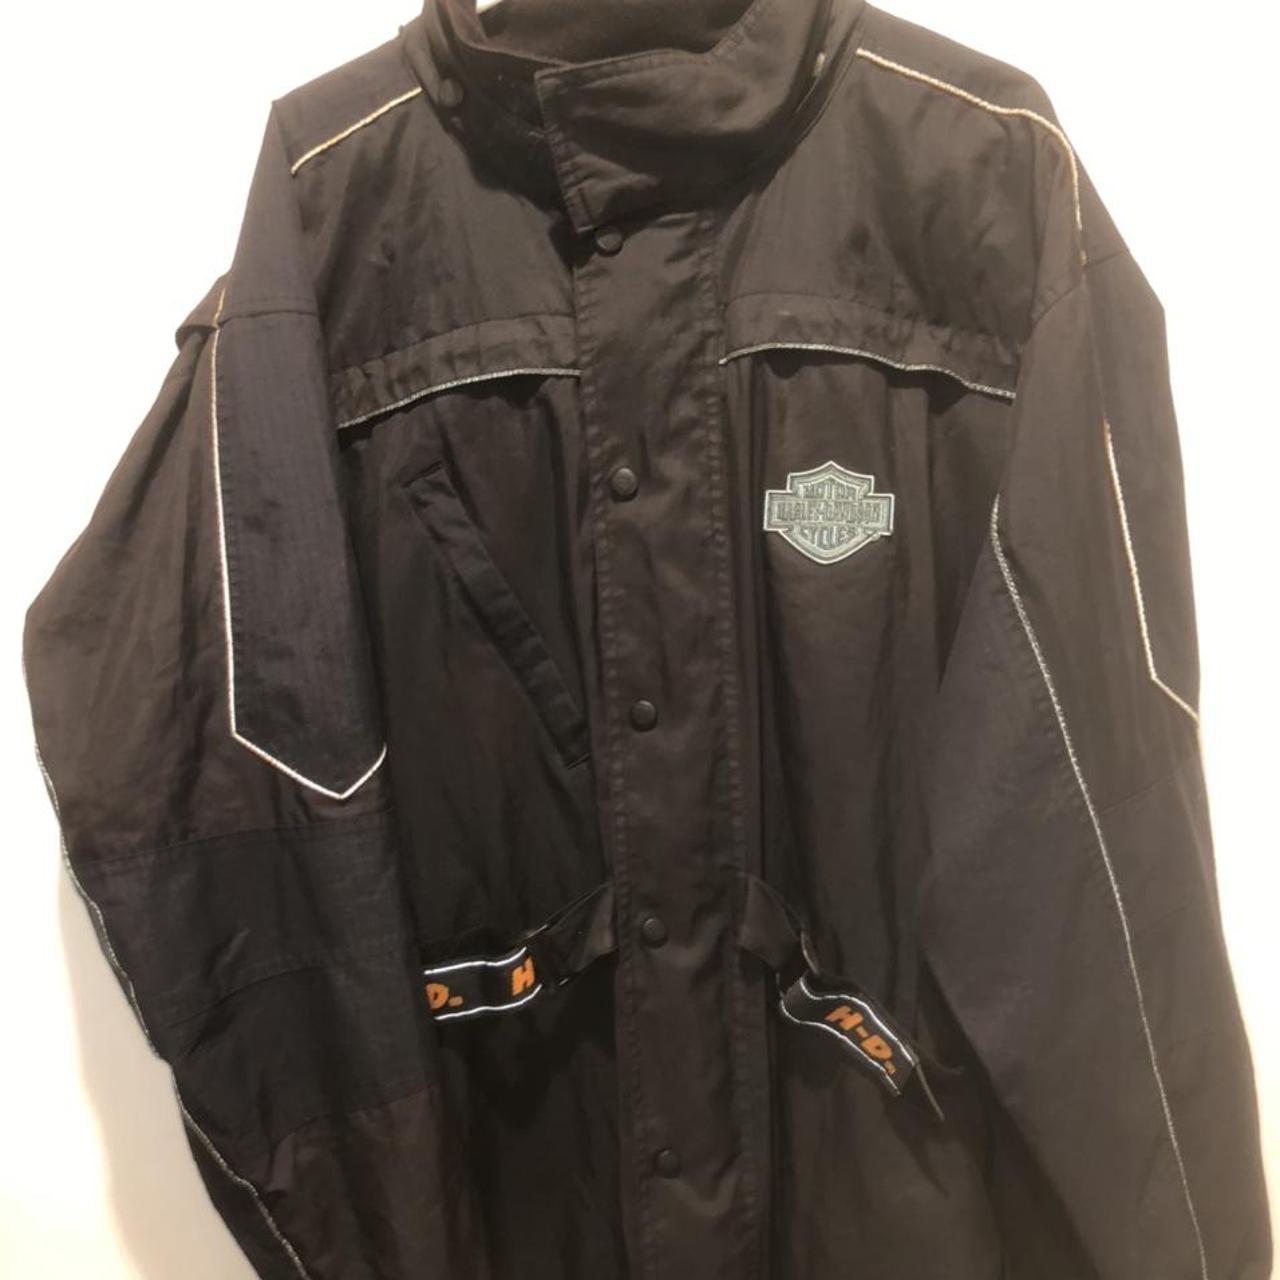 Vintage Harley Davidson Motorcycle jacket waterproof... - Depop